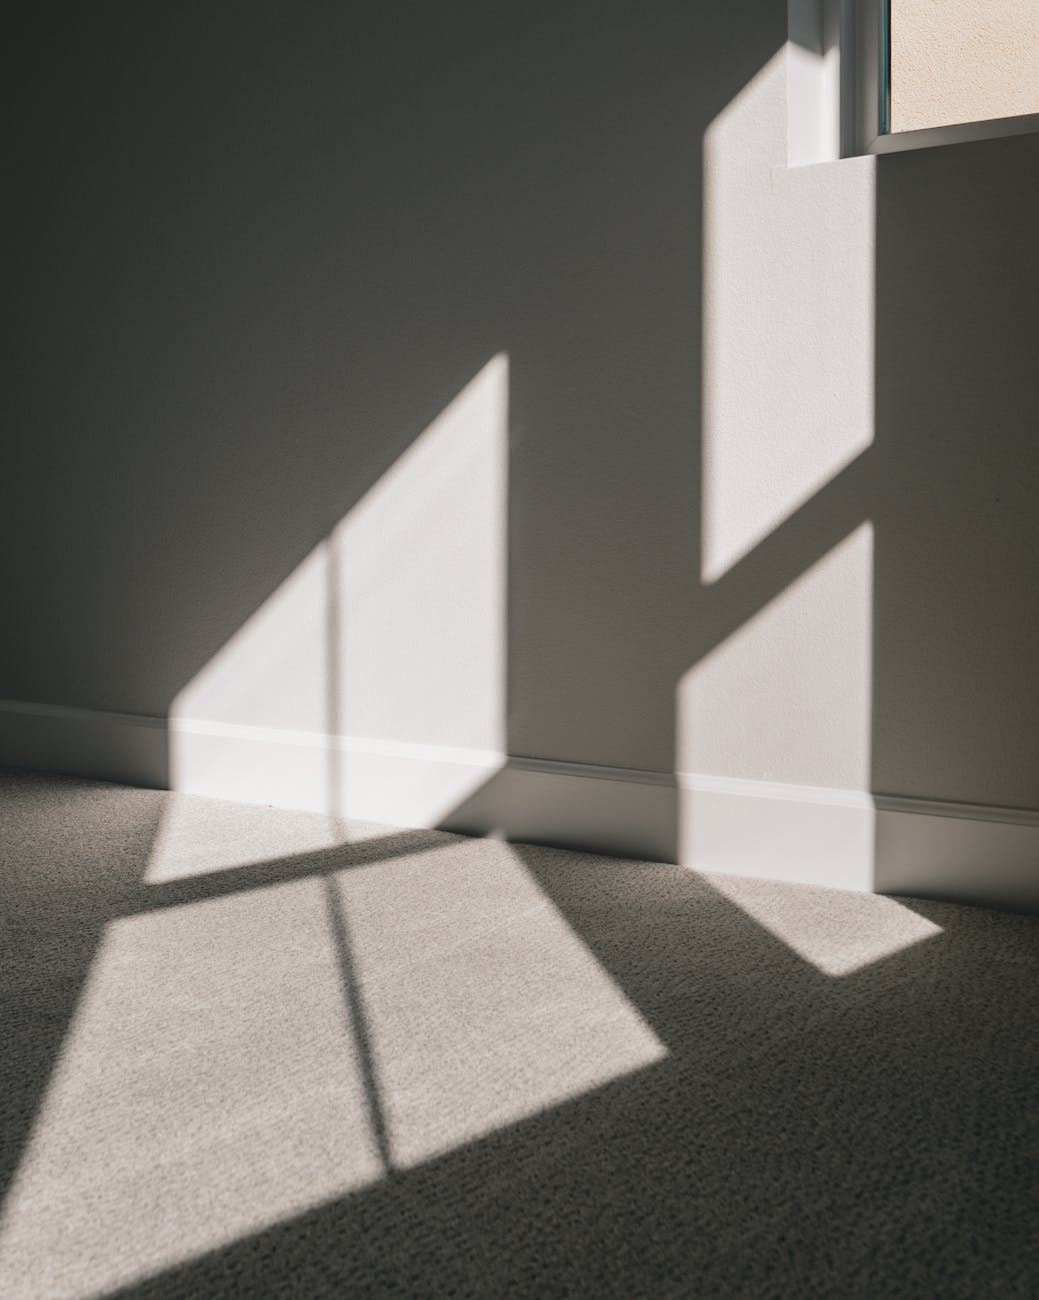 window shadow on wall and floor of modern room